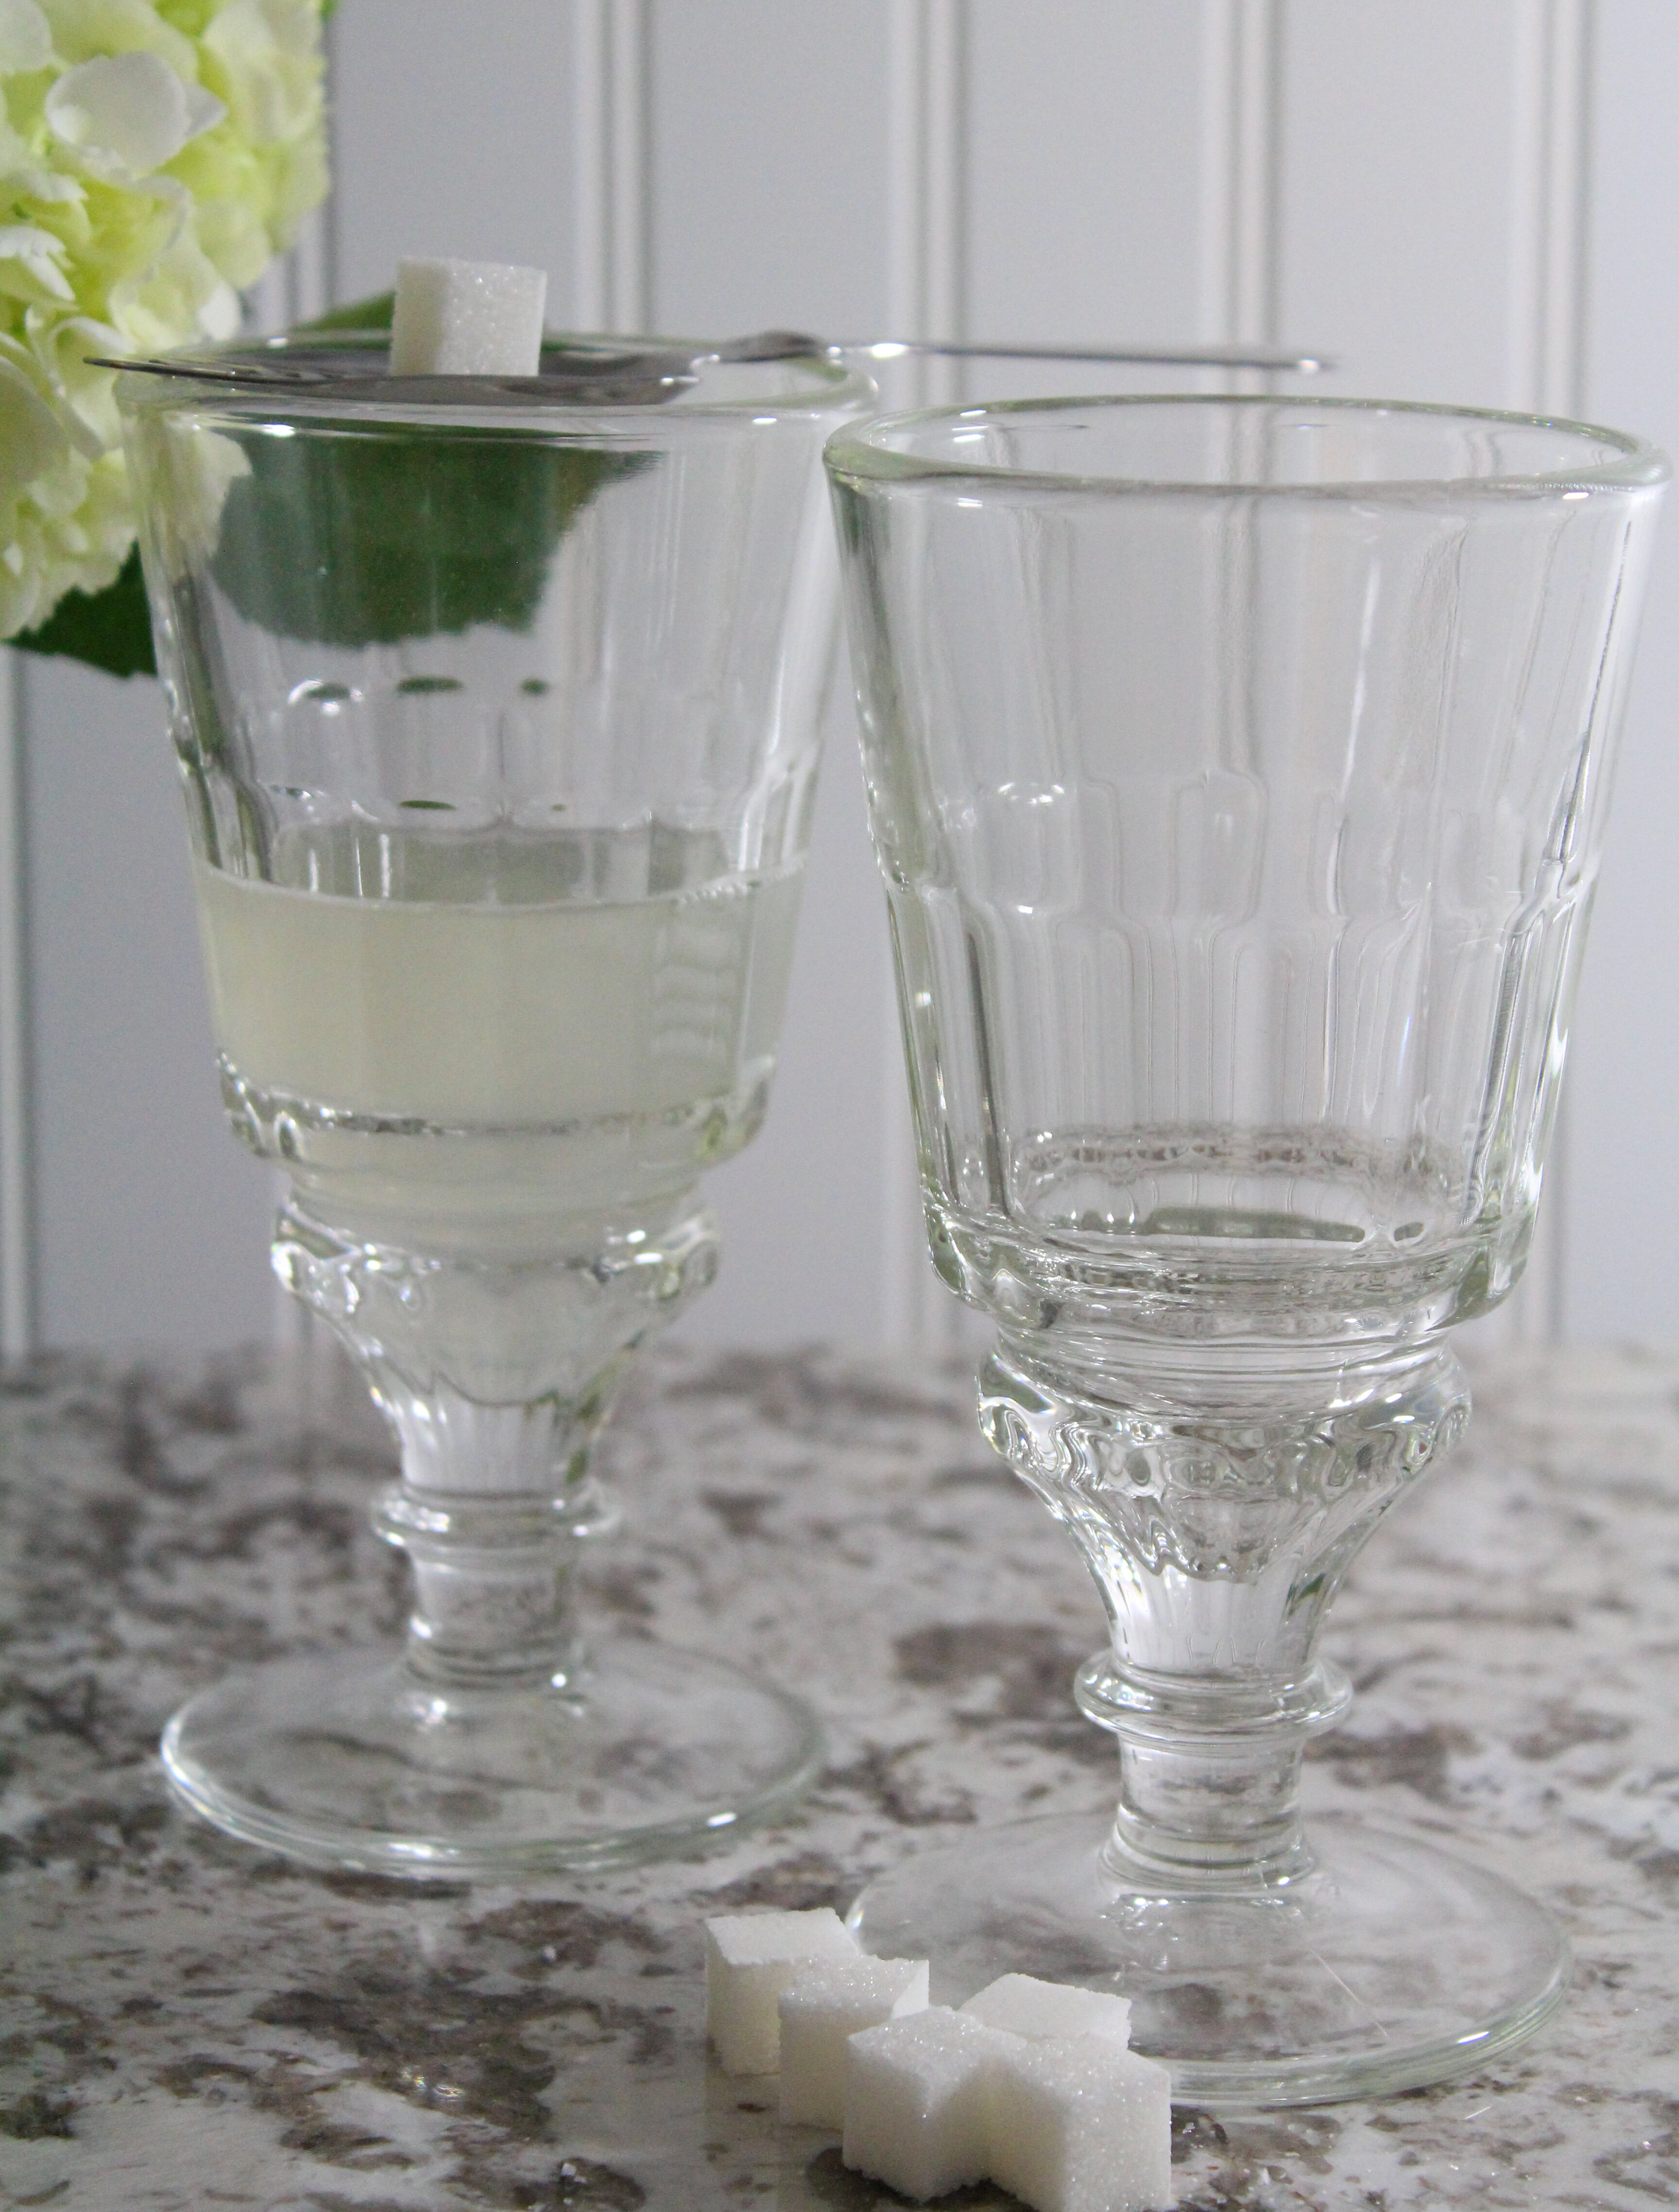 La Rochere PERIGORD Wine Glass, Set of 6